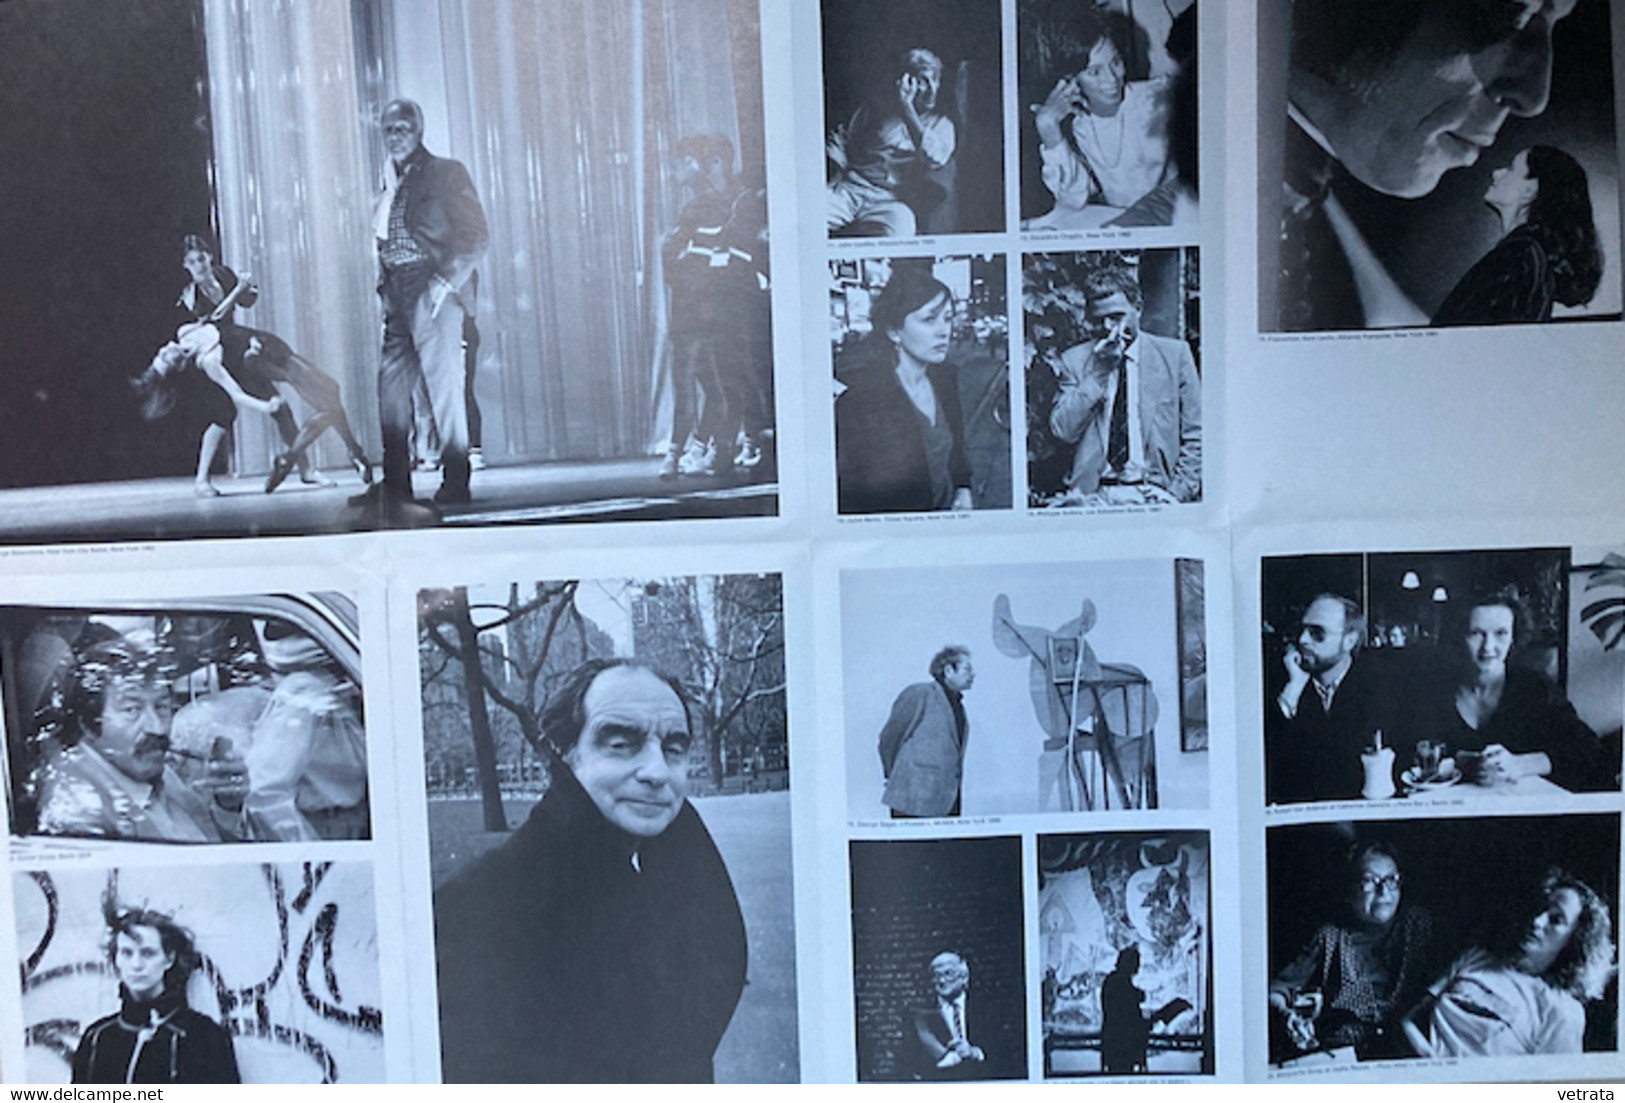 Femmes photographes : 33 documents (articles-dépliants-cartes-signet) (T. Modotti-G. Chaumel- L. Model -M. Ricciardi-L.